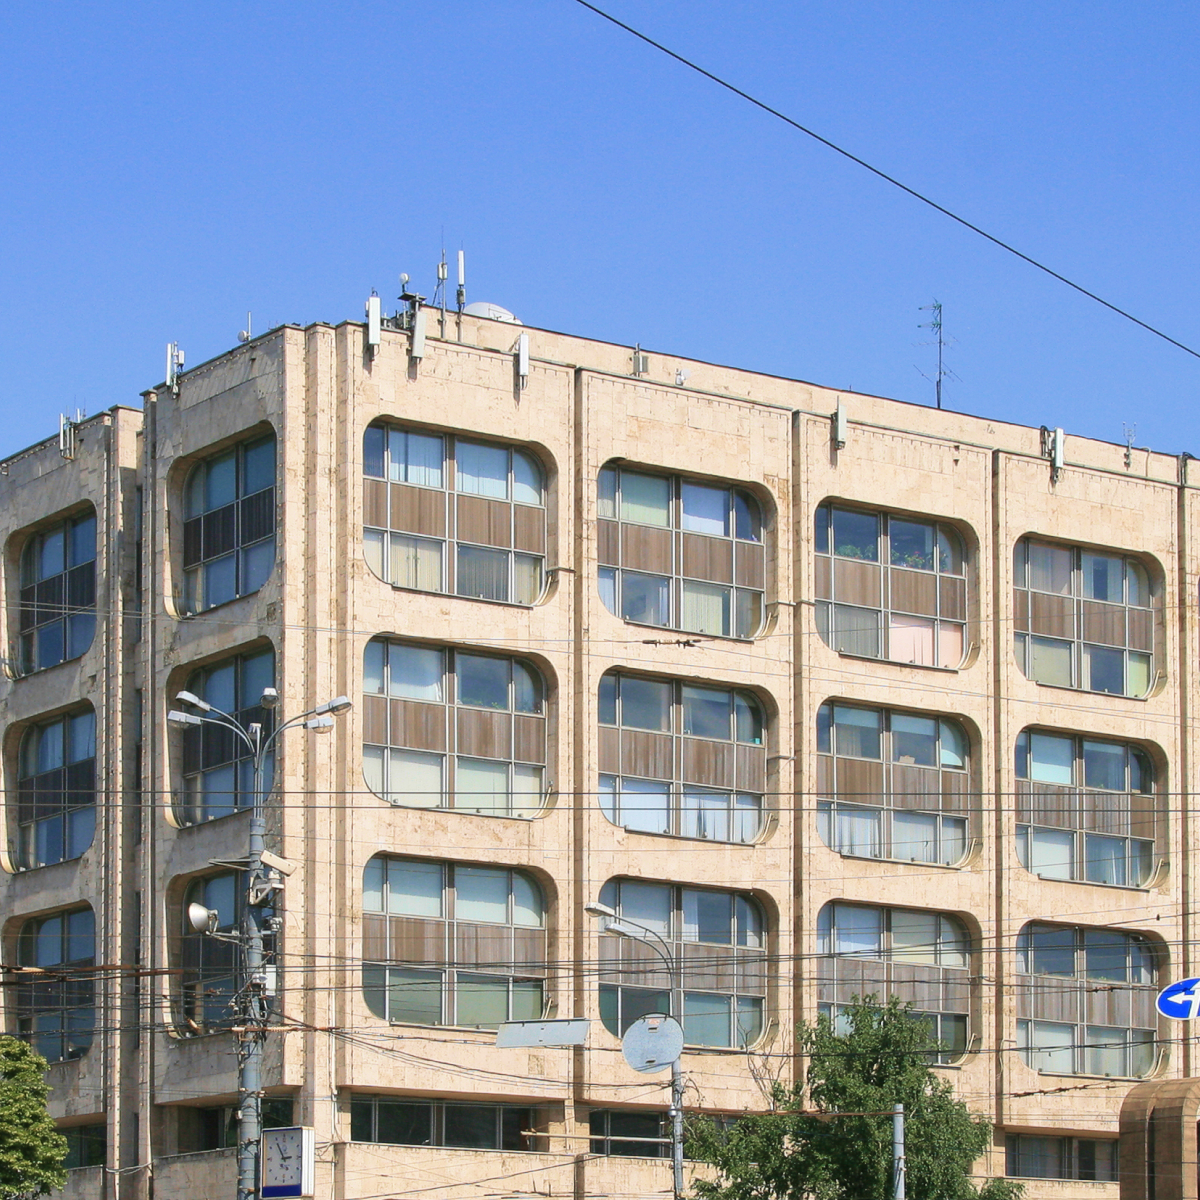 Здание ТАСС — пример советского модернизма